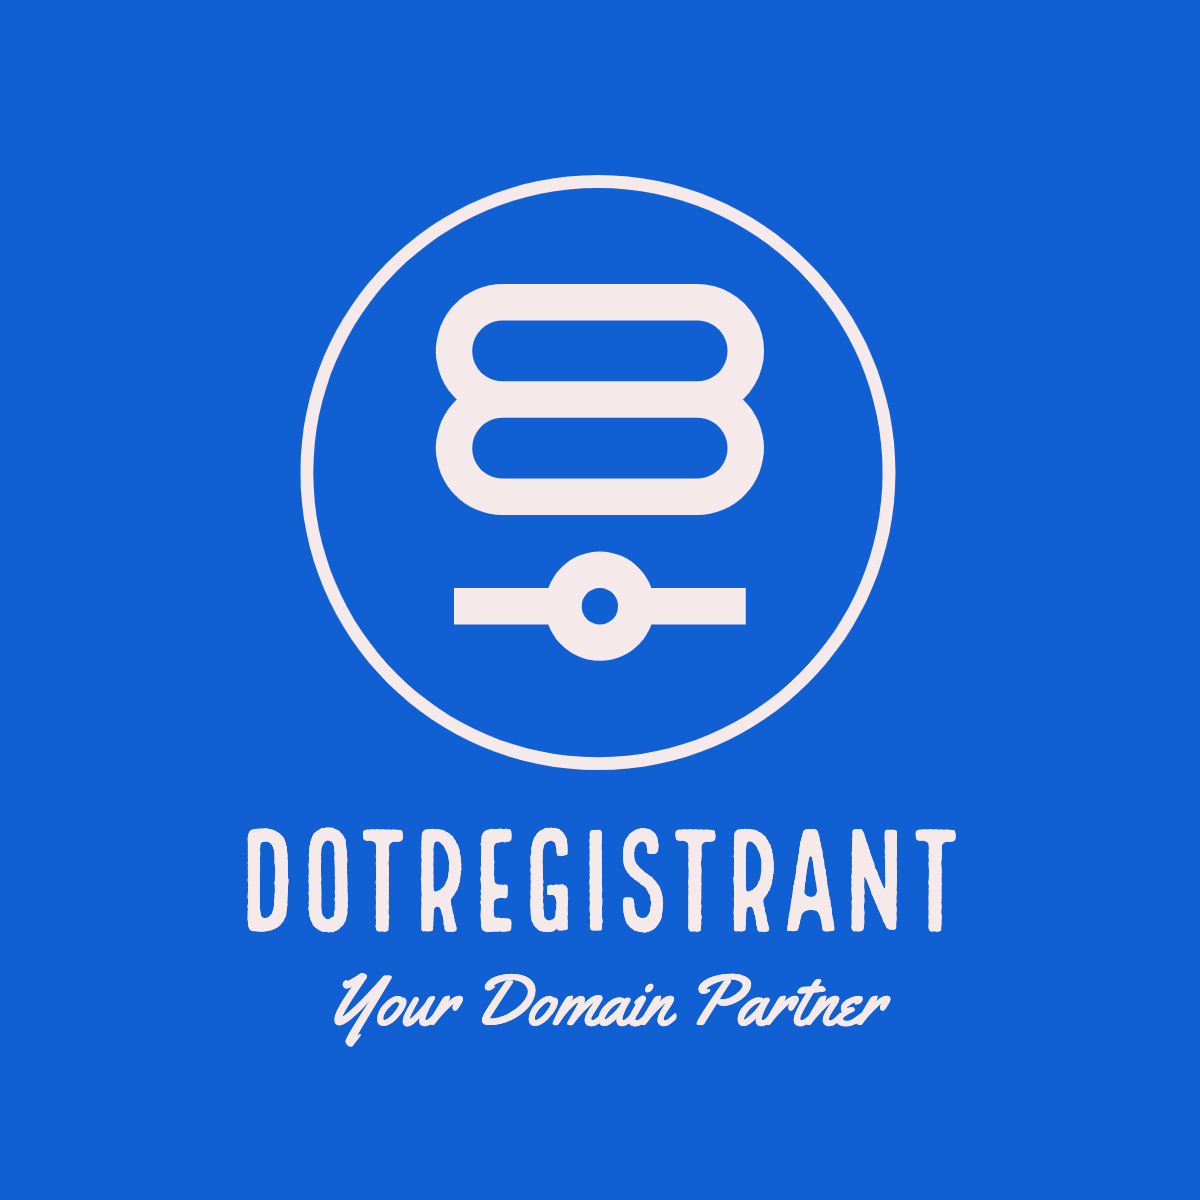 DOTREGISTRANT.COM